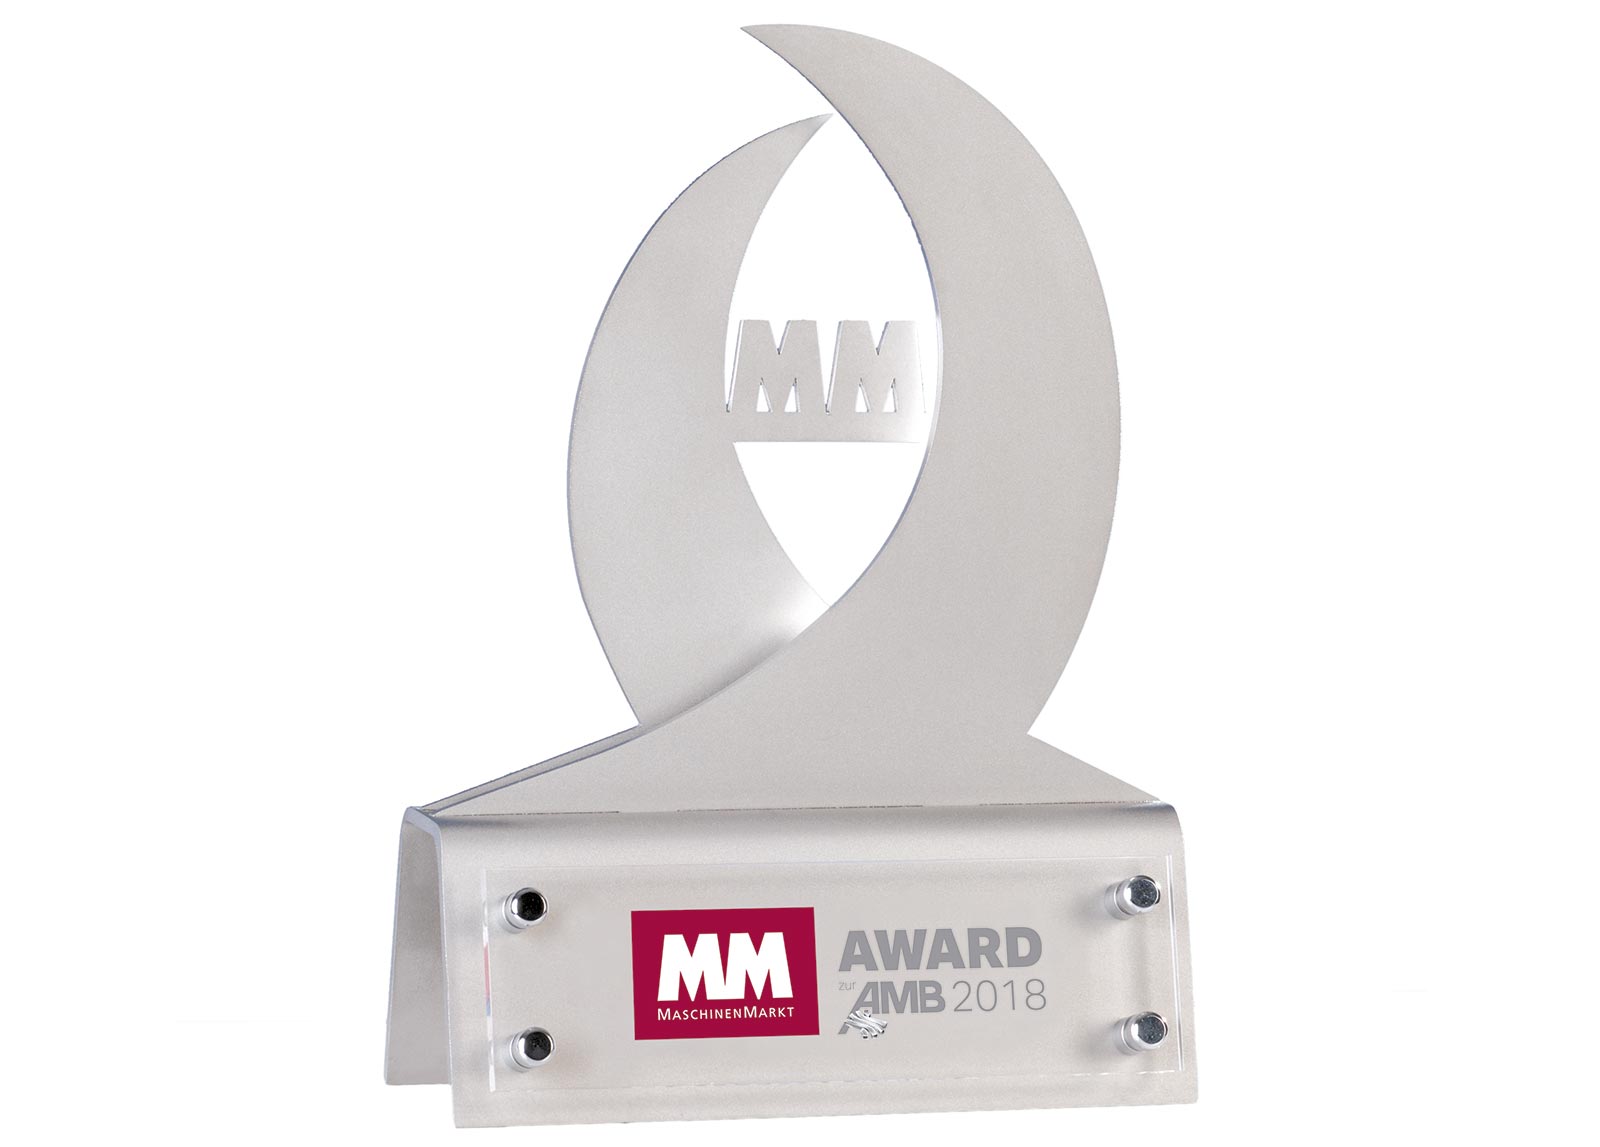 SORALUCE ha sido galardonado con el premio “MM zur AMB 2018”